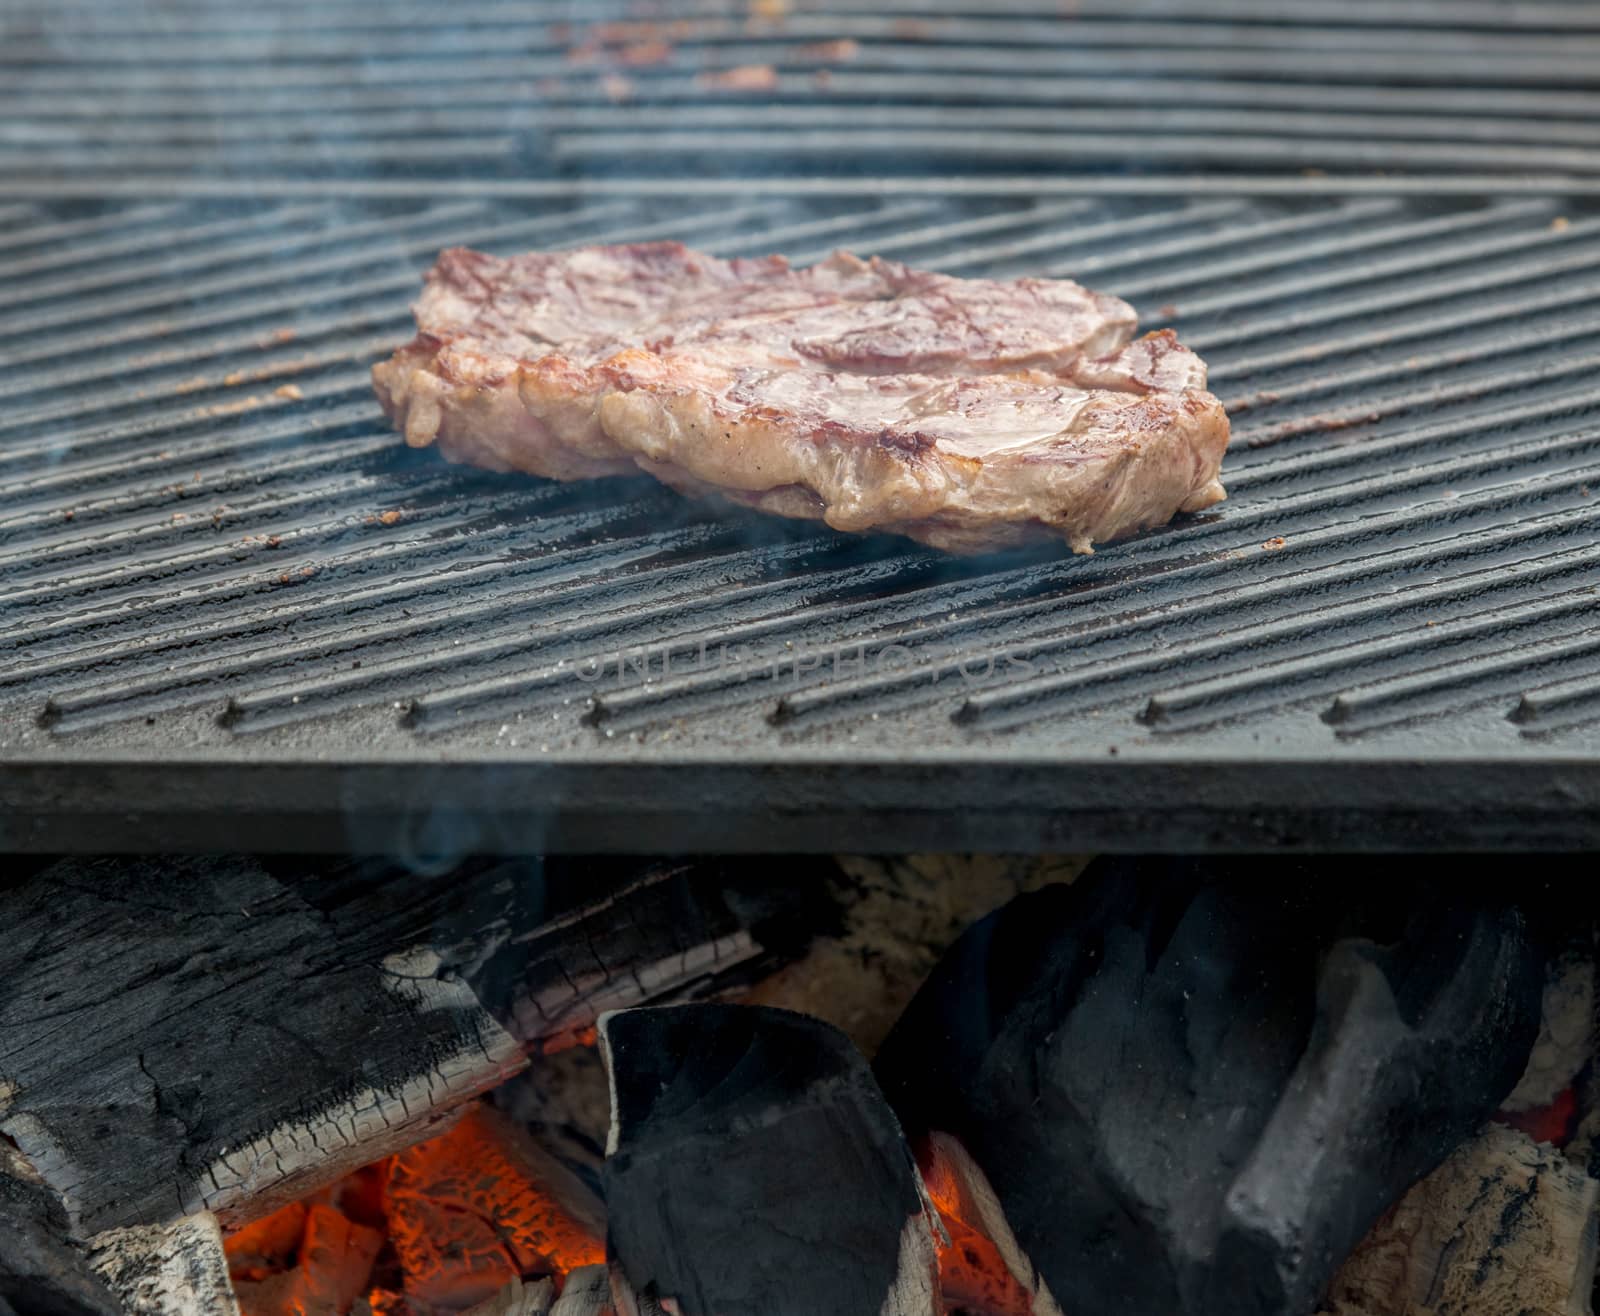 beef steaks on the grill by vlaru